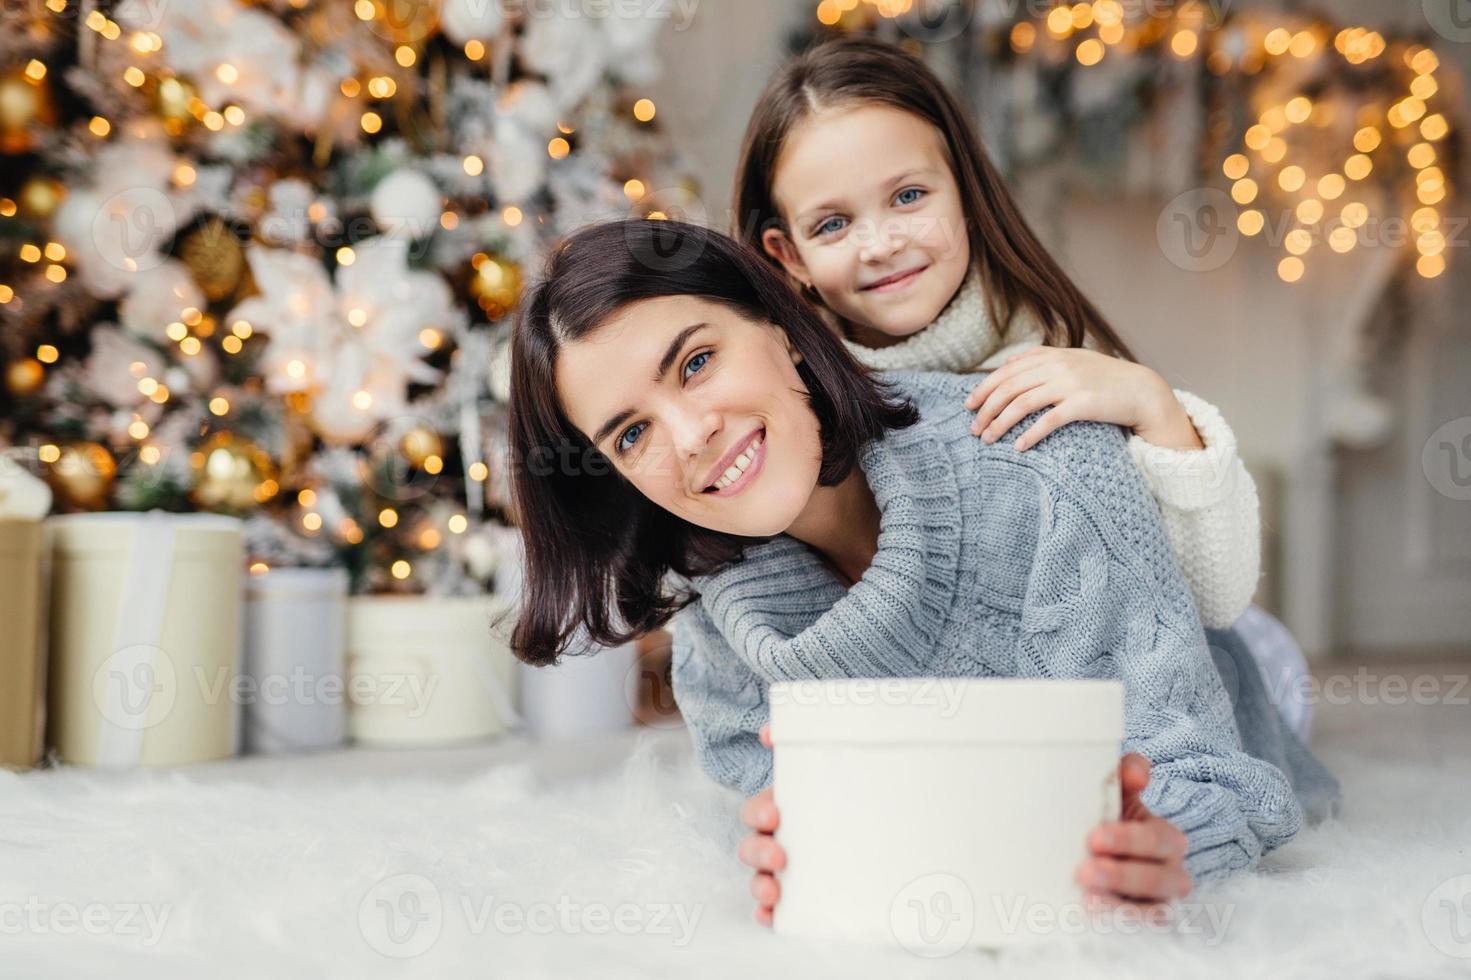 kinder-, familien- und feierkonzept. entzückende frau im gestrickten pullover hält weiße geschenkbox und kleines kind steht hinter ihrem rücken, gute laune vor silvesterabend. wartendes Wunder foto